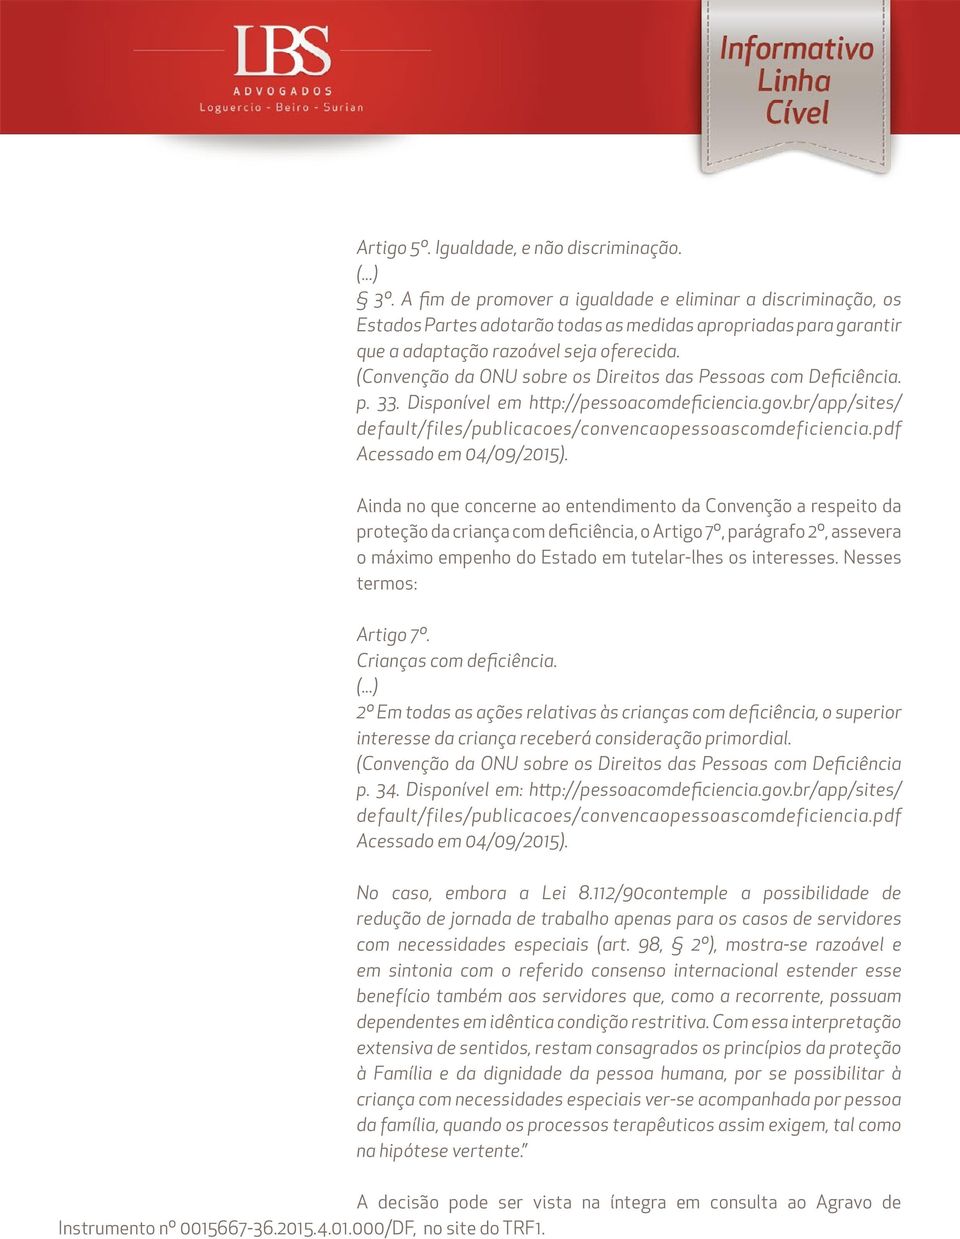 (Convenção da ONU sobre os Direitos das Pessoas com Deficiência. p. 33. Disponível em http://pessoacomdeficiencia.gov.br/app/sites/ default/files/publicacoes/convencaopessoascomdeficiencia.